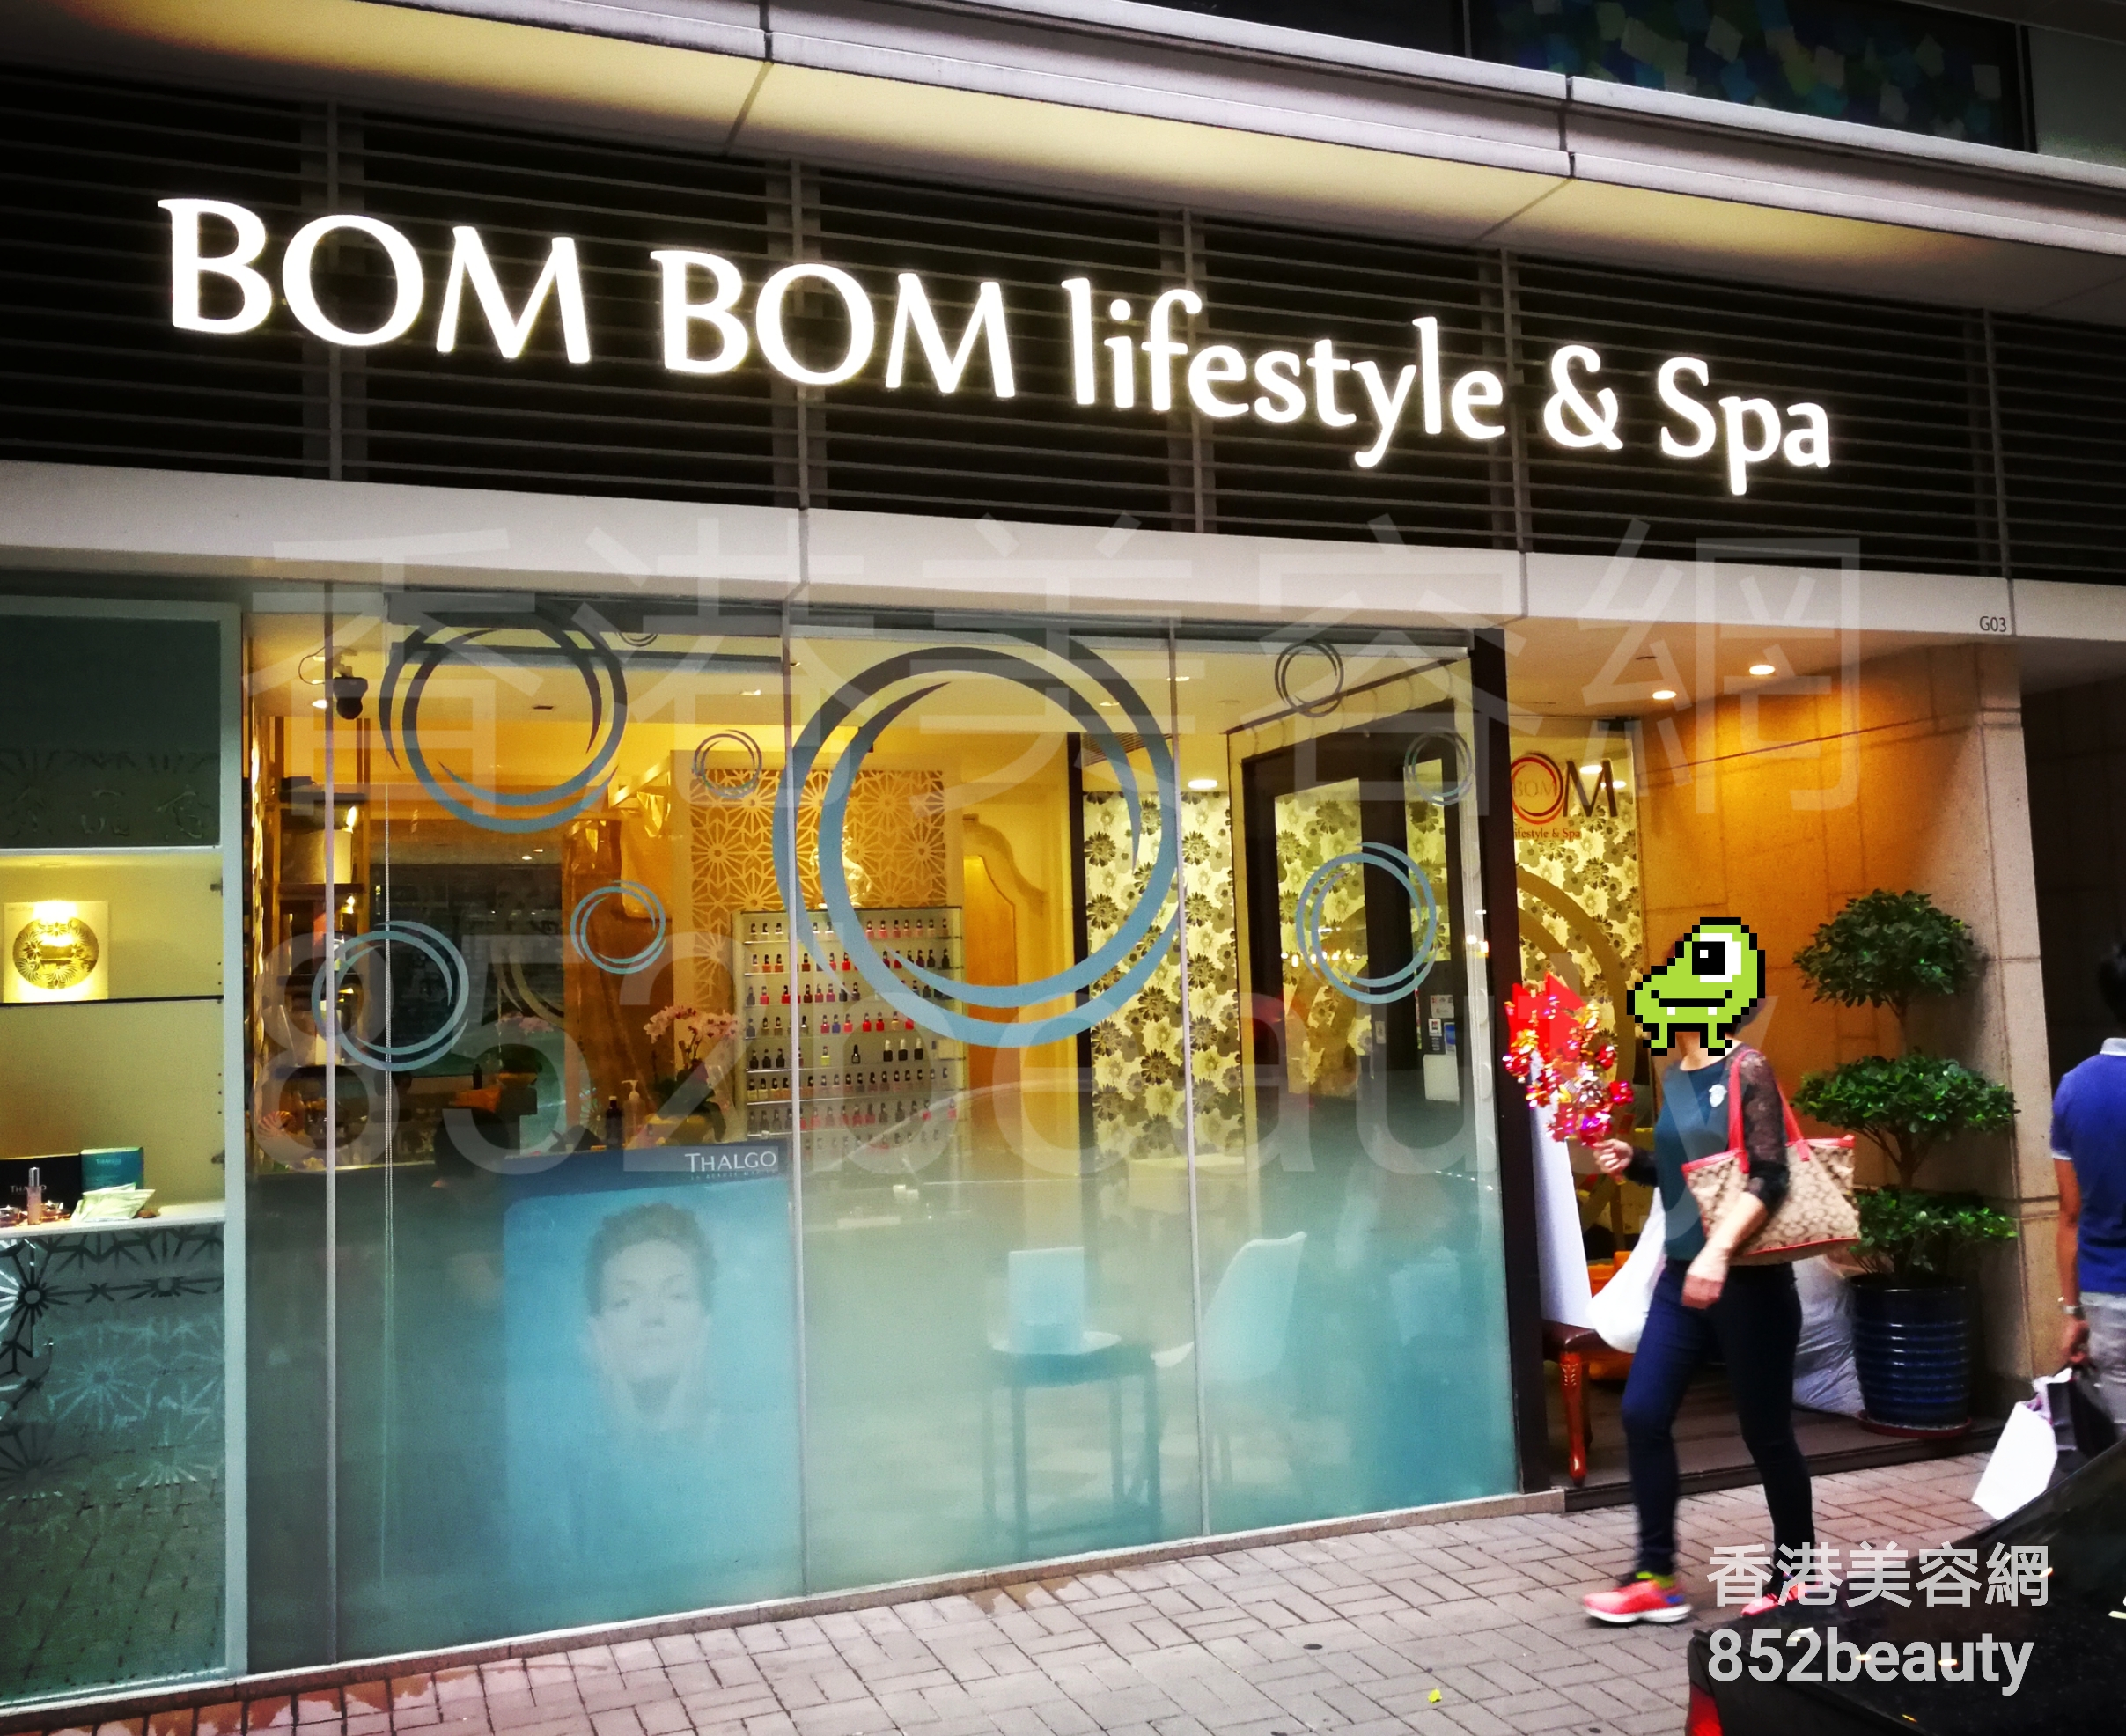 修眉/眼睫毛: BOM BOM lifestyle & Spa